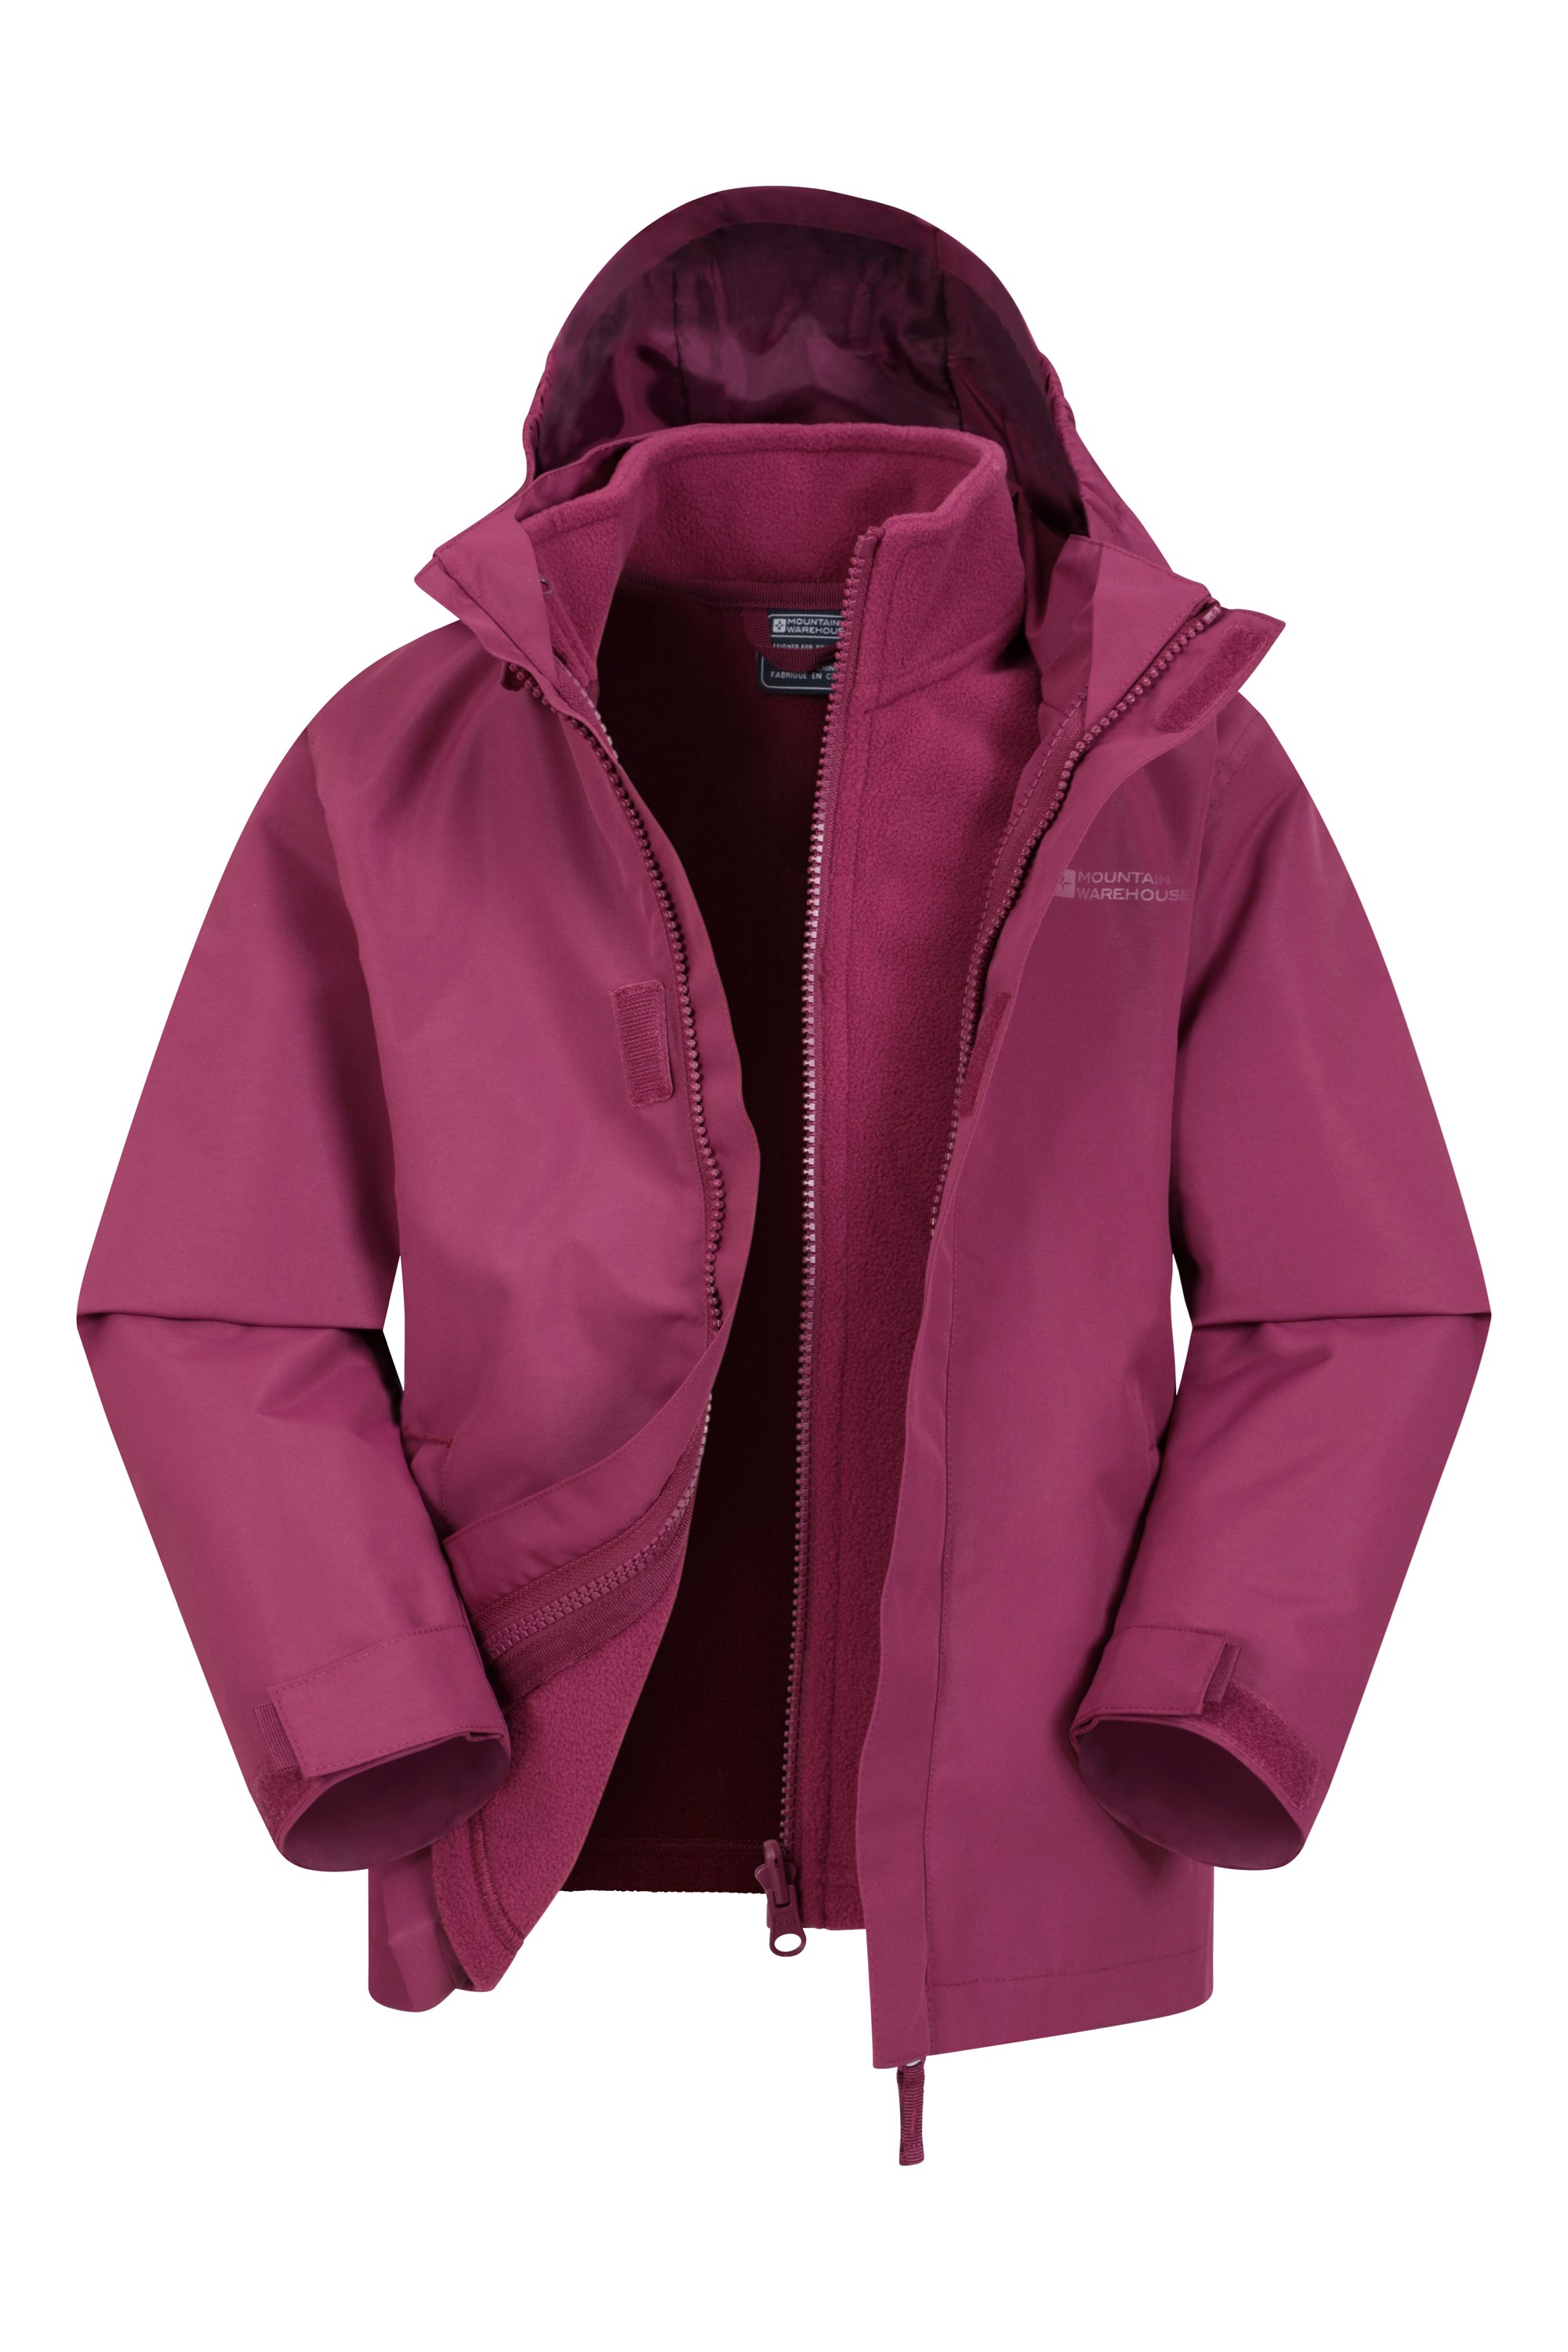 Kids' 3-In-1 Jacket - All in Motion Purple XL